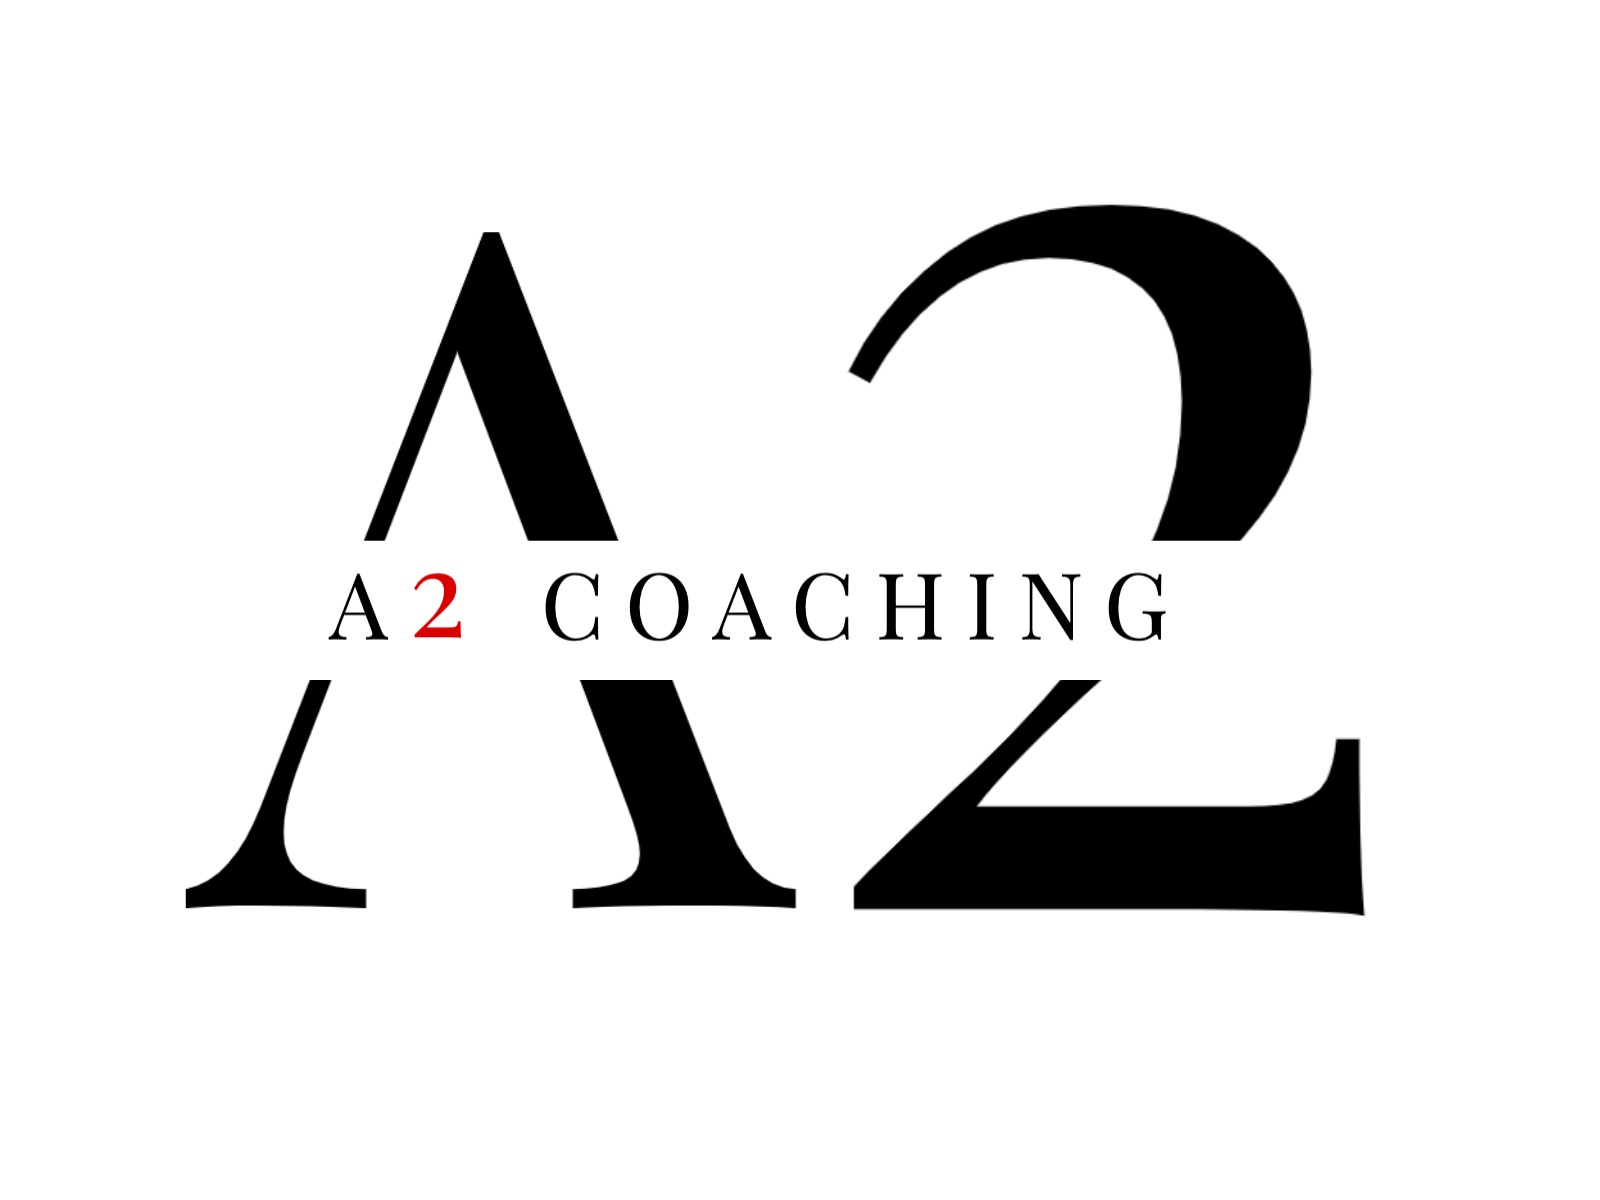 A2 Coaching